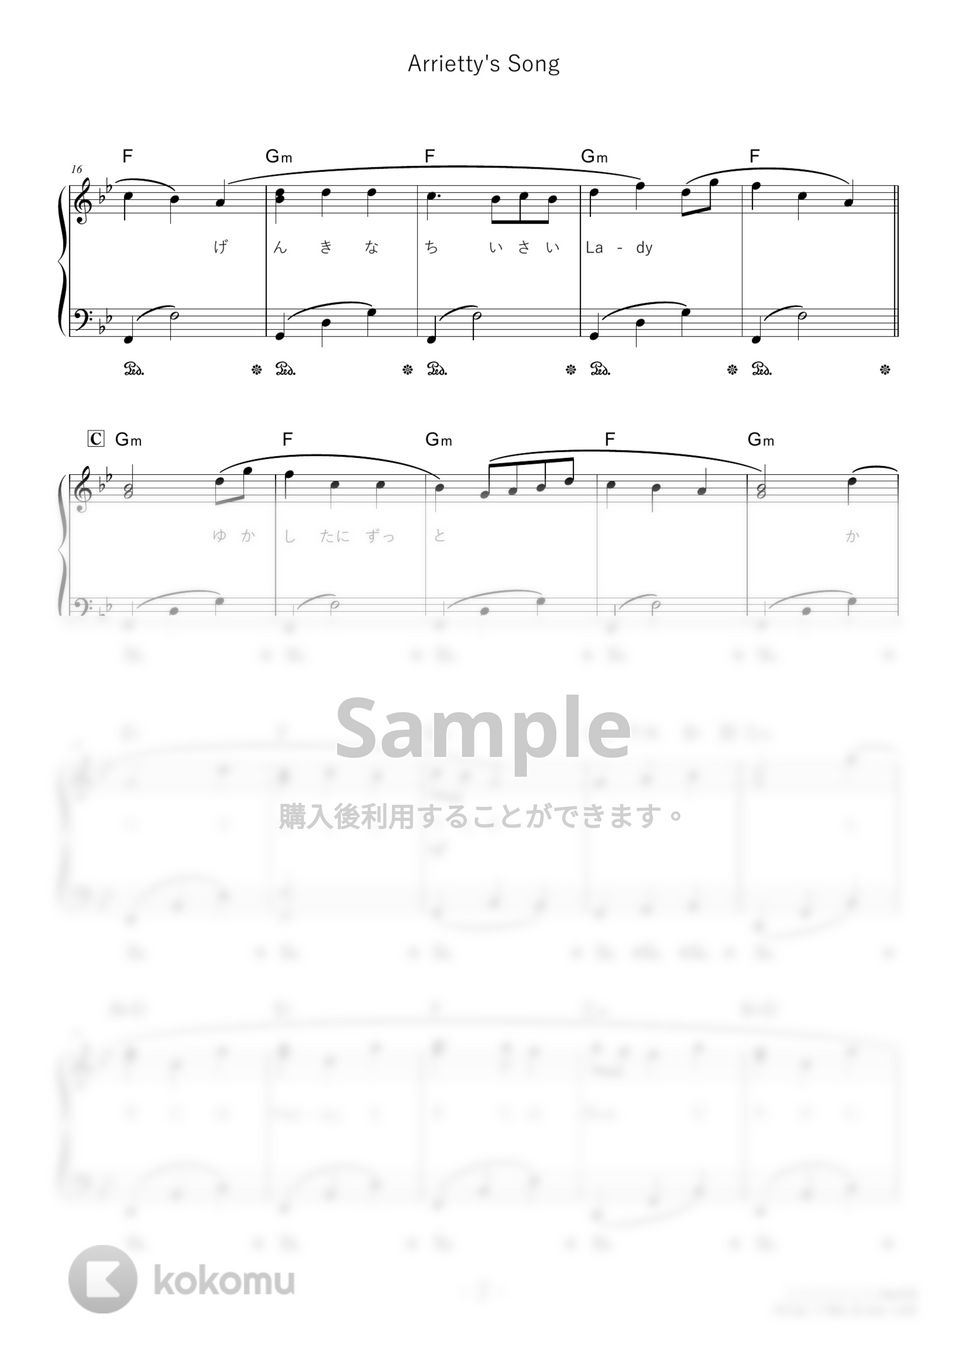 セシル・コルベル - Arrietty's Song (難易度:★★☆☆☆/歌詞・コード・ペダル付き) by Dさん